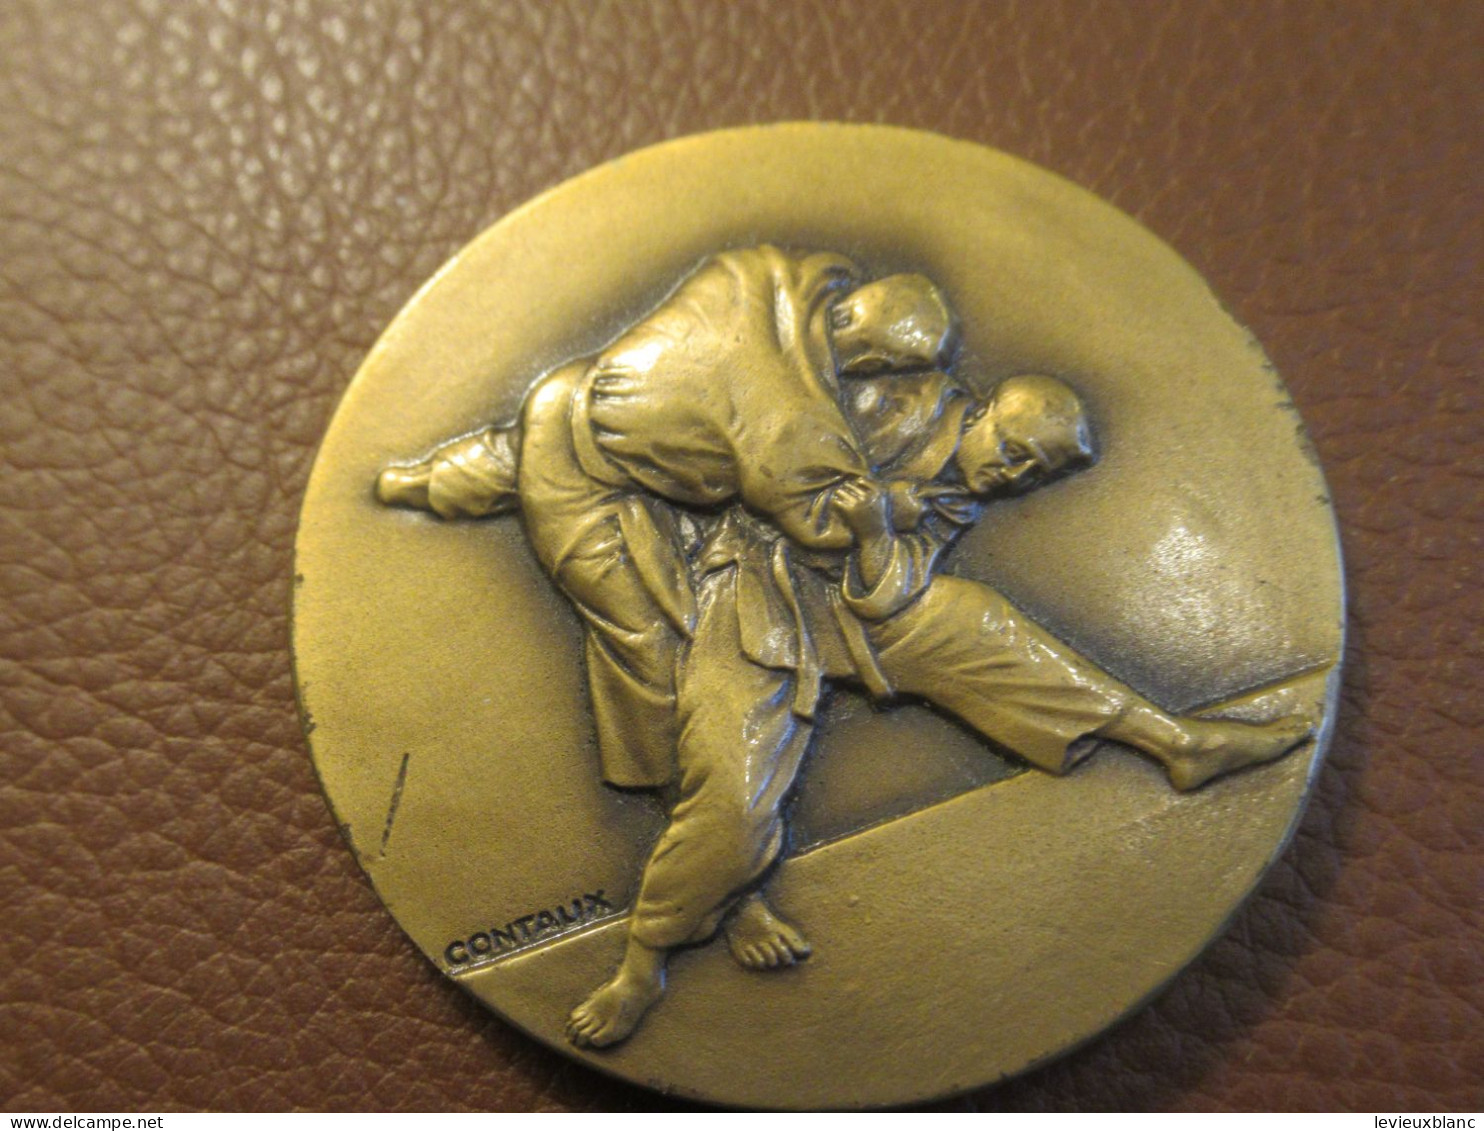 JUDO / Médaille De Compétition / Non Attribuée/ Bronze   /Vers 1950-1970   SPO462 - Sports De Combat